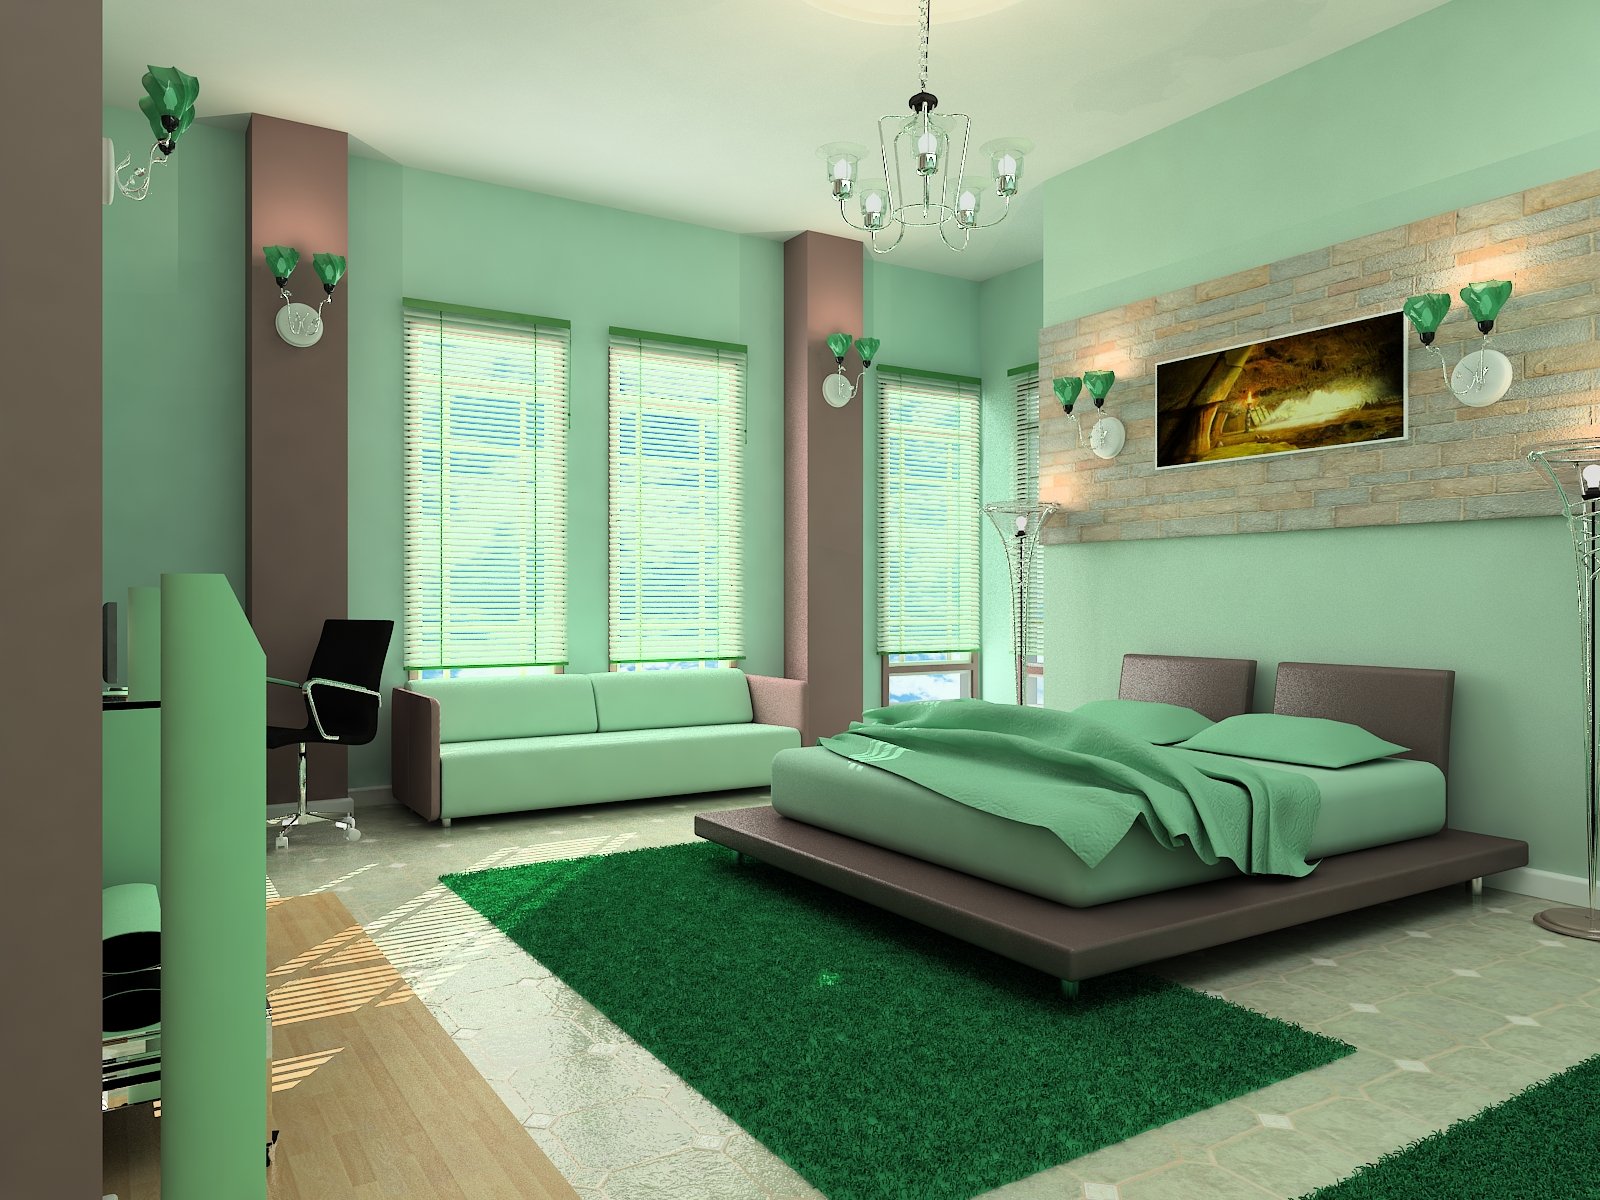 Спальня в зеленых тонах: варианты дизайна интерьера с фото, возможные сочетания цветов, мятный, фисташковый, салатовый и другие